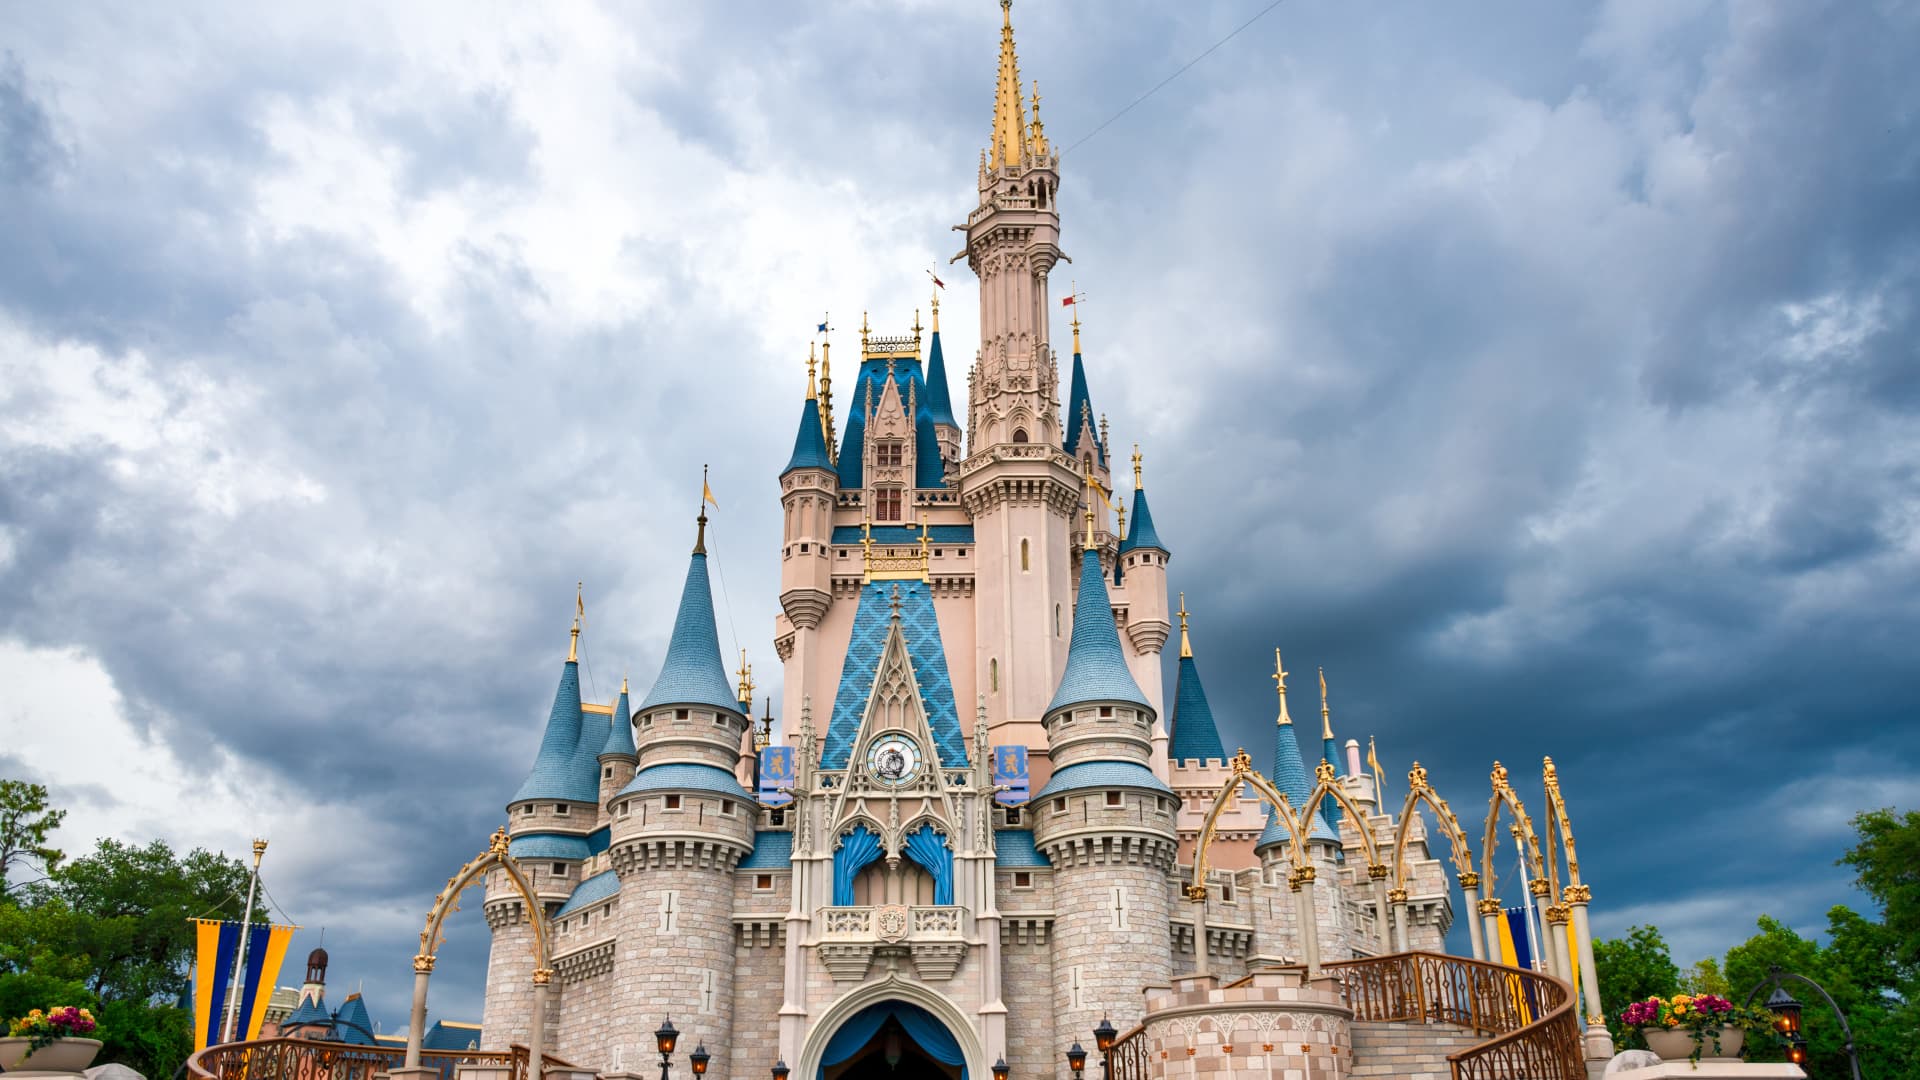 День диснейленда. Уолт Дисней замок. Диснейленд (Walt Disney World), Флорида. Диснейленд замок спящей красавицы.